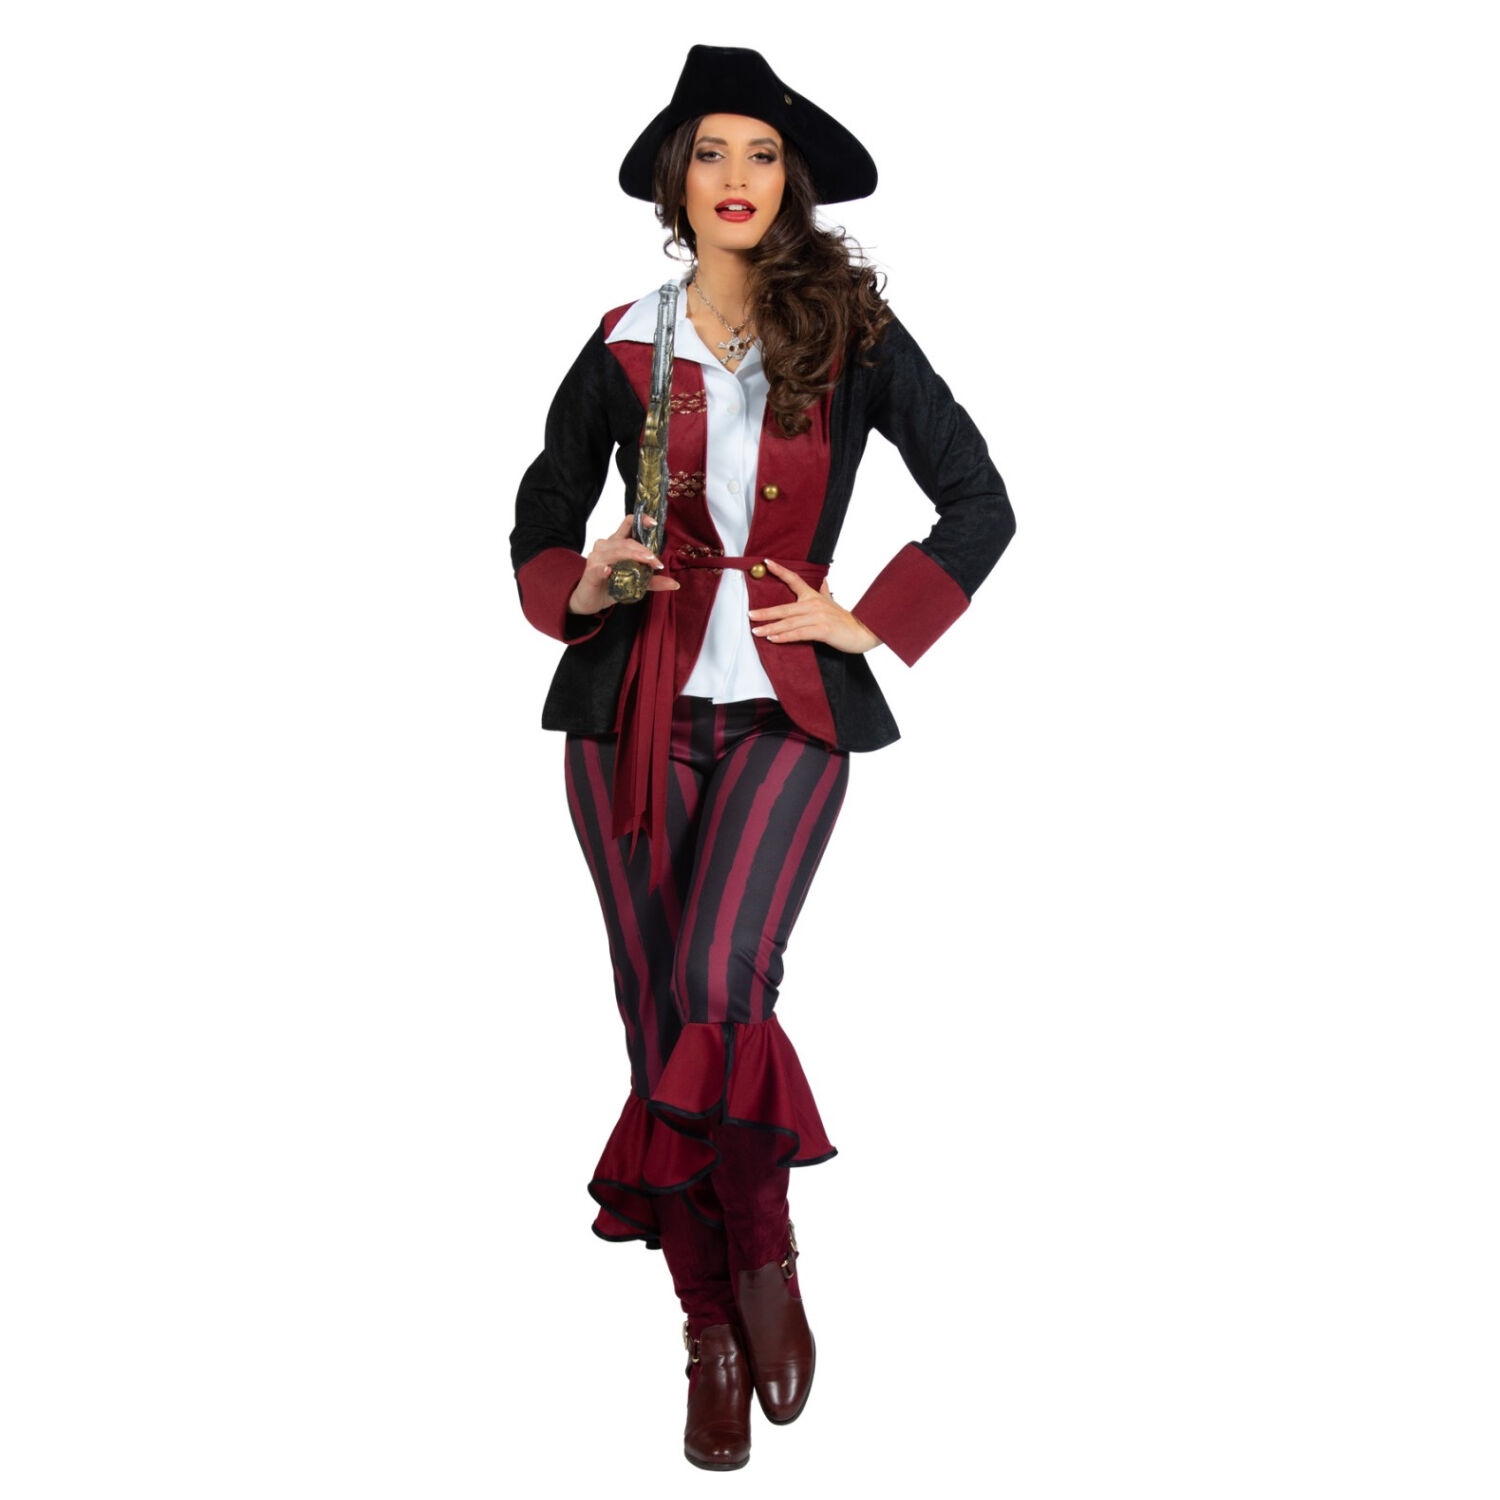 NEU Damen-Kostüm Piratin, 3-tlg. mit Hose, Jacke und Gürtel, burgund-schwarz, Gr. 36 Bild 2